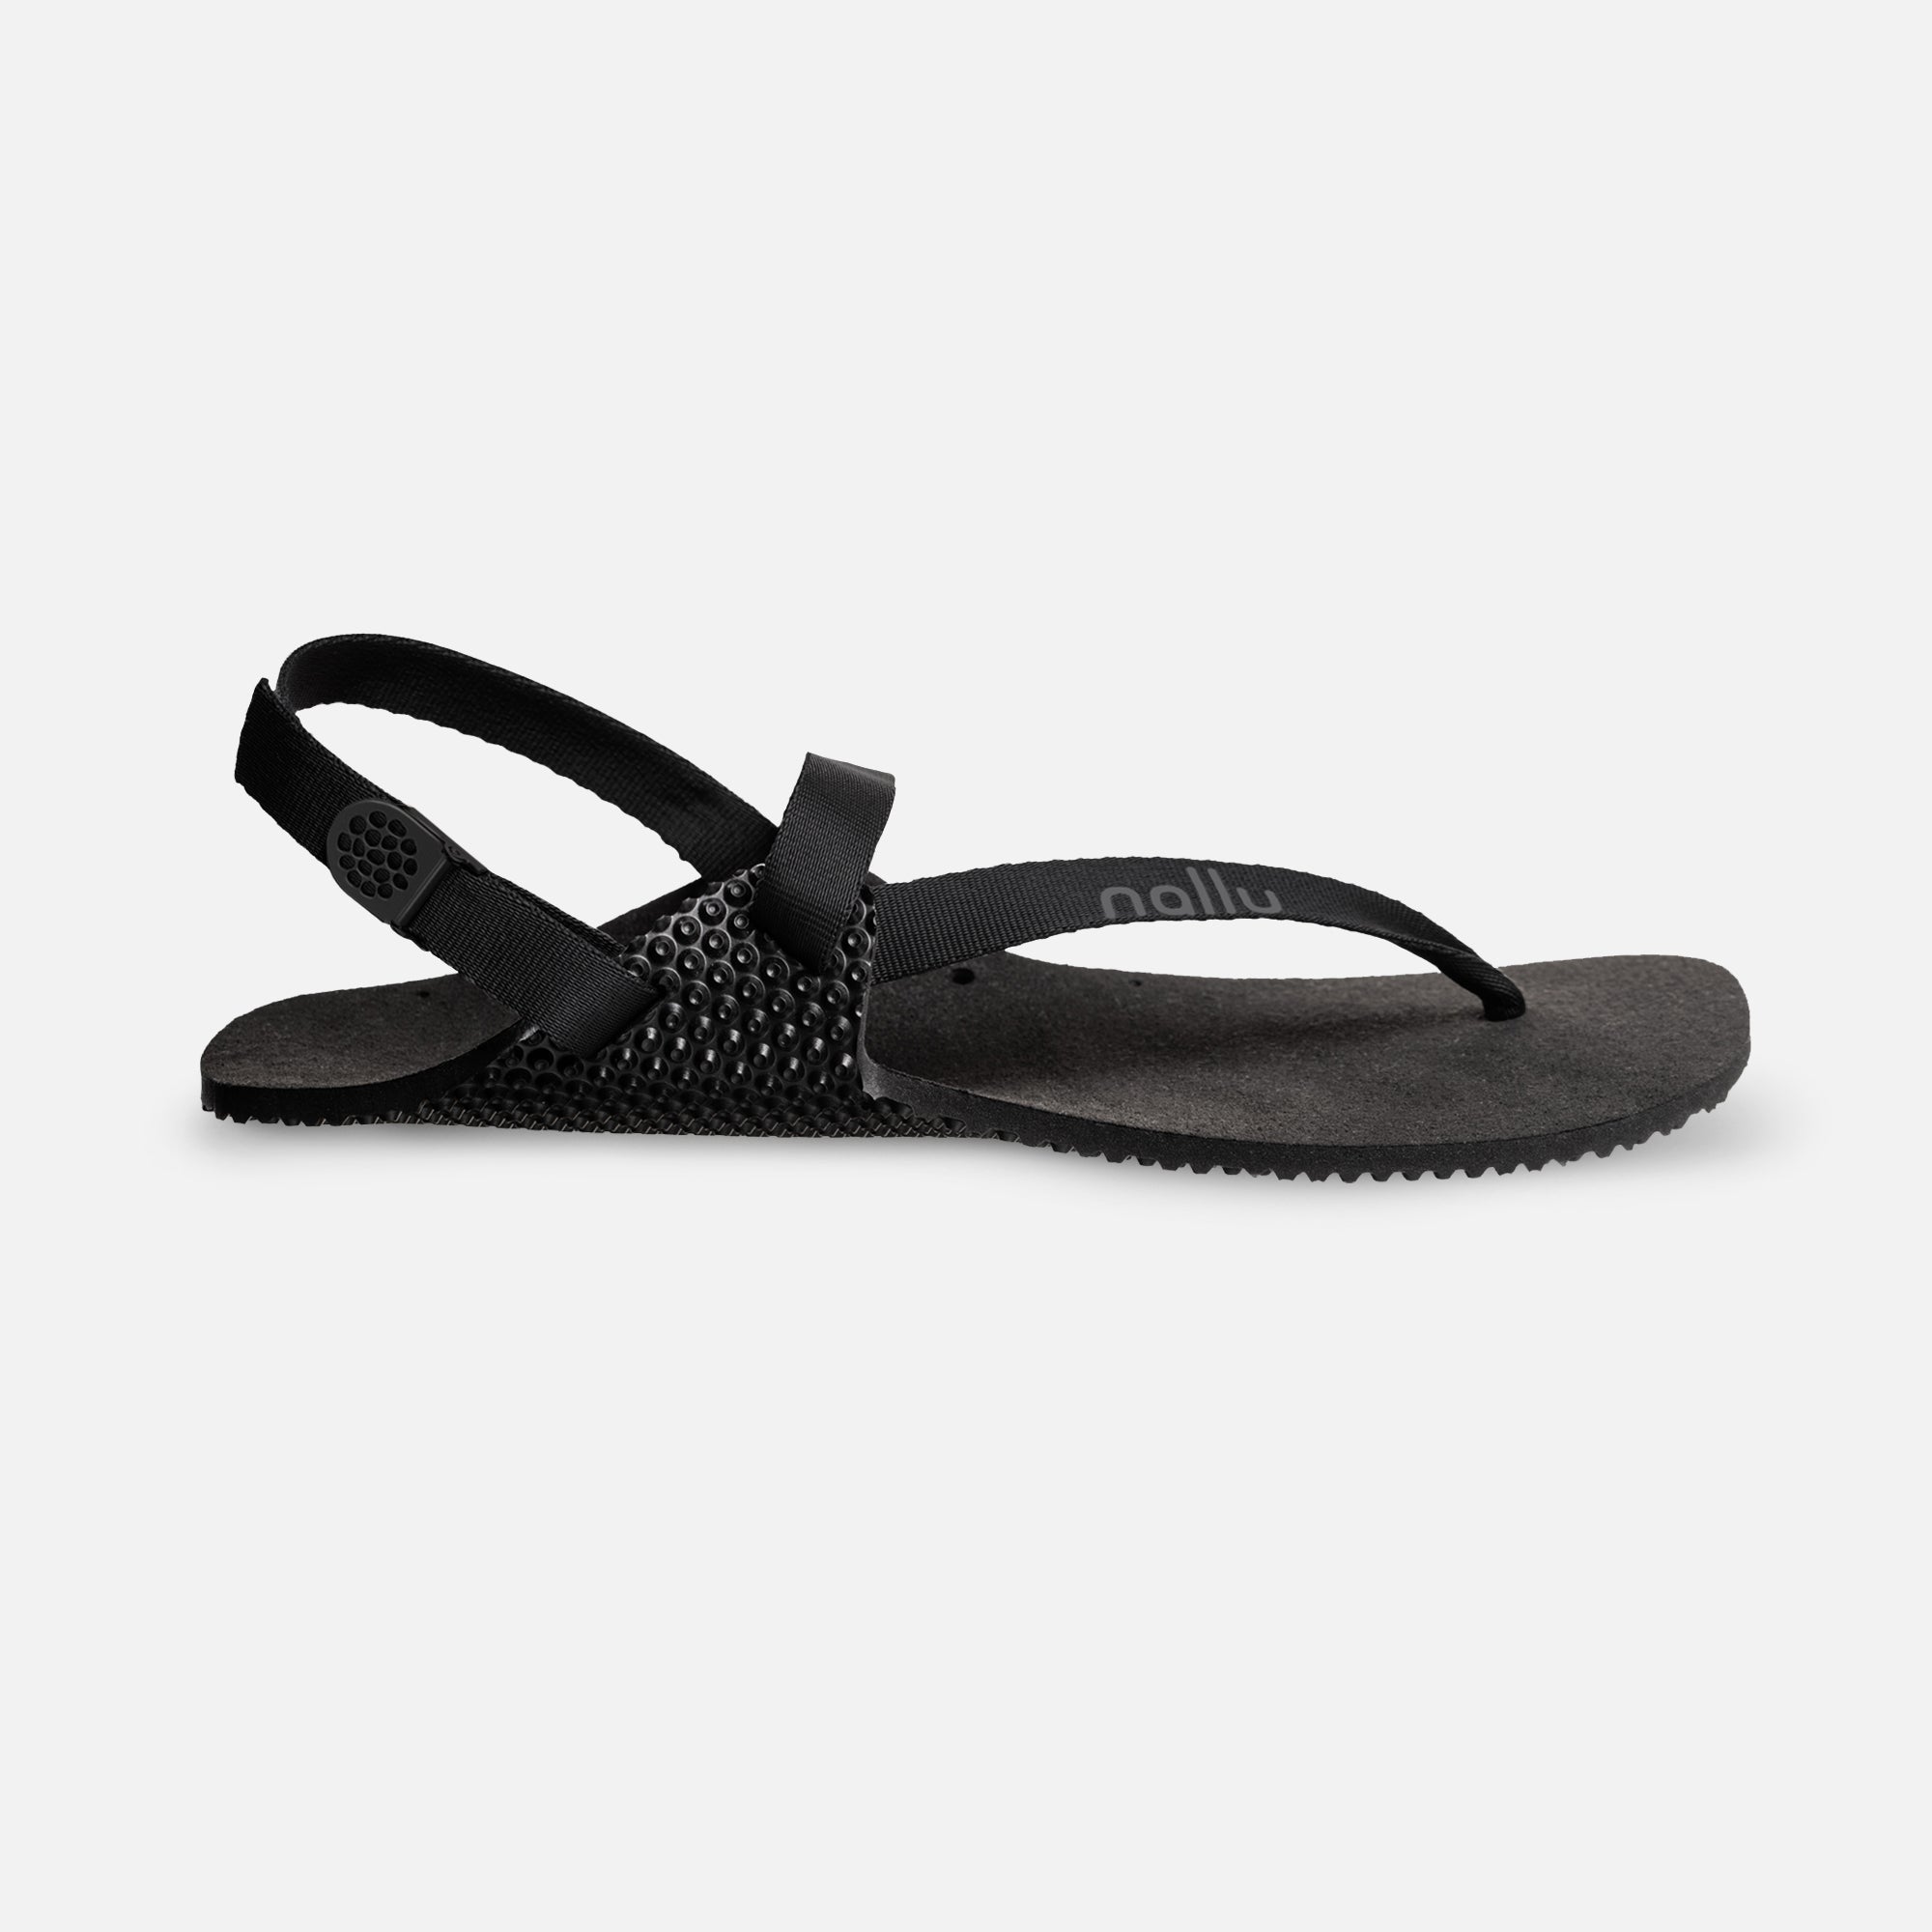 Nallu Explorer barfods sandaler til kvinder og mænd i farven black, yderside